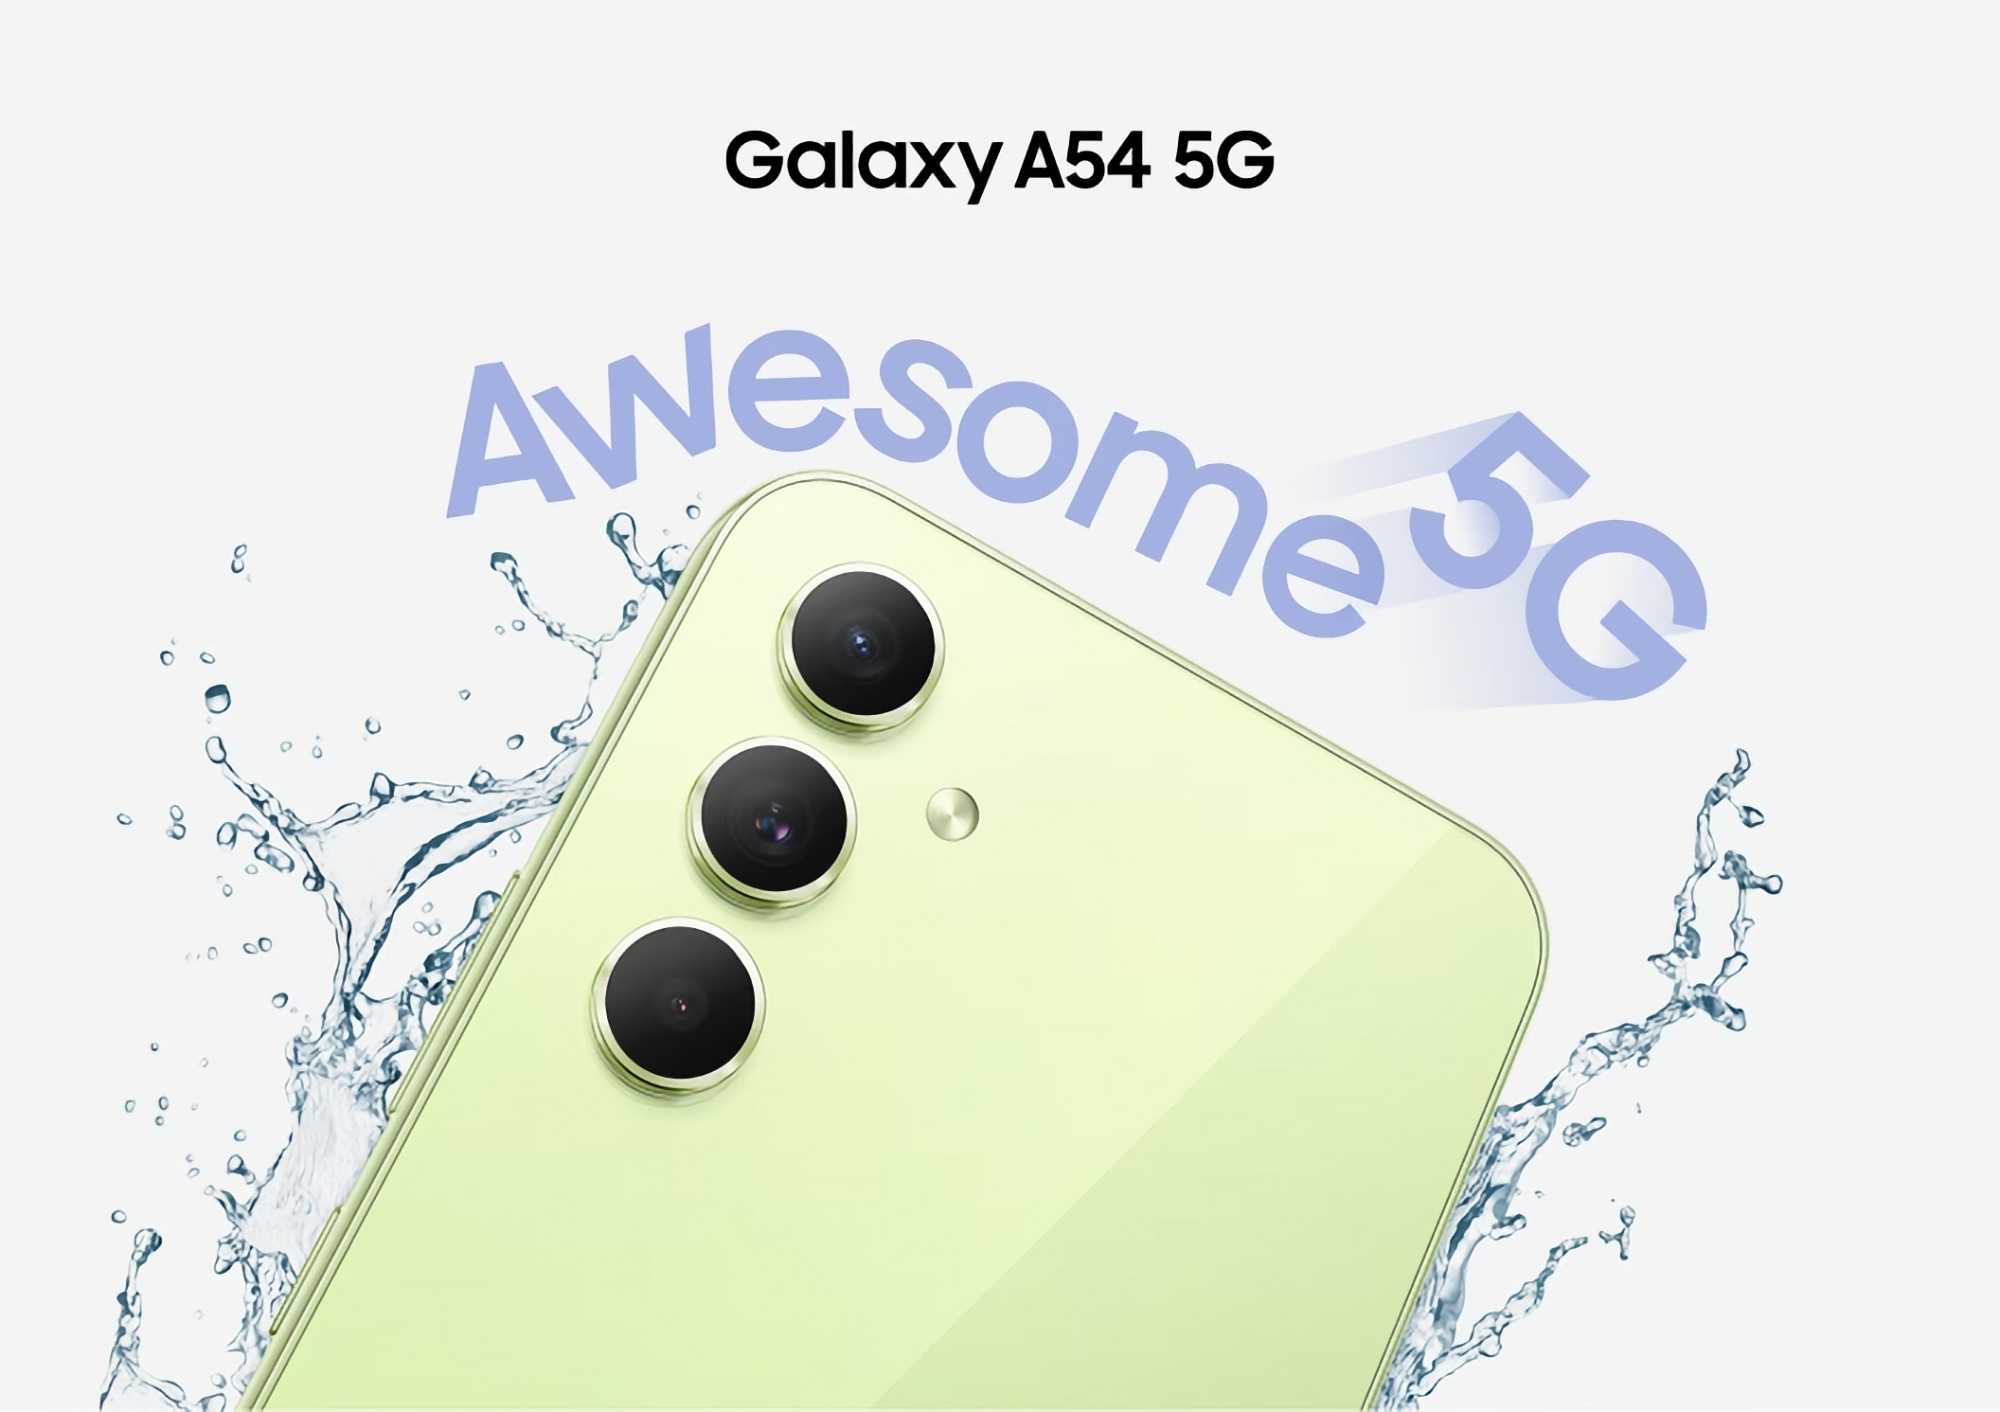 Nicht nur Galaxy Buds 2: Samsung Galaxy A54 5G ist auch bei Amazon zum Aktionspreis erhältlich